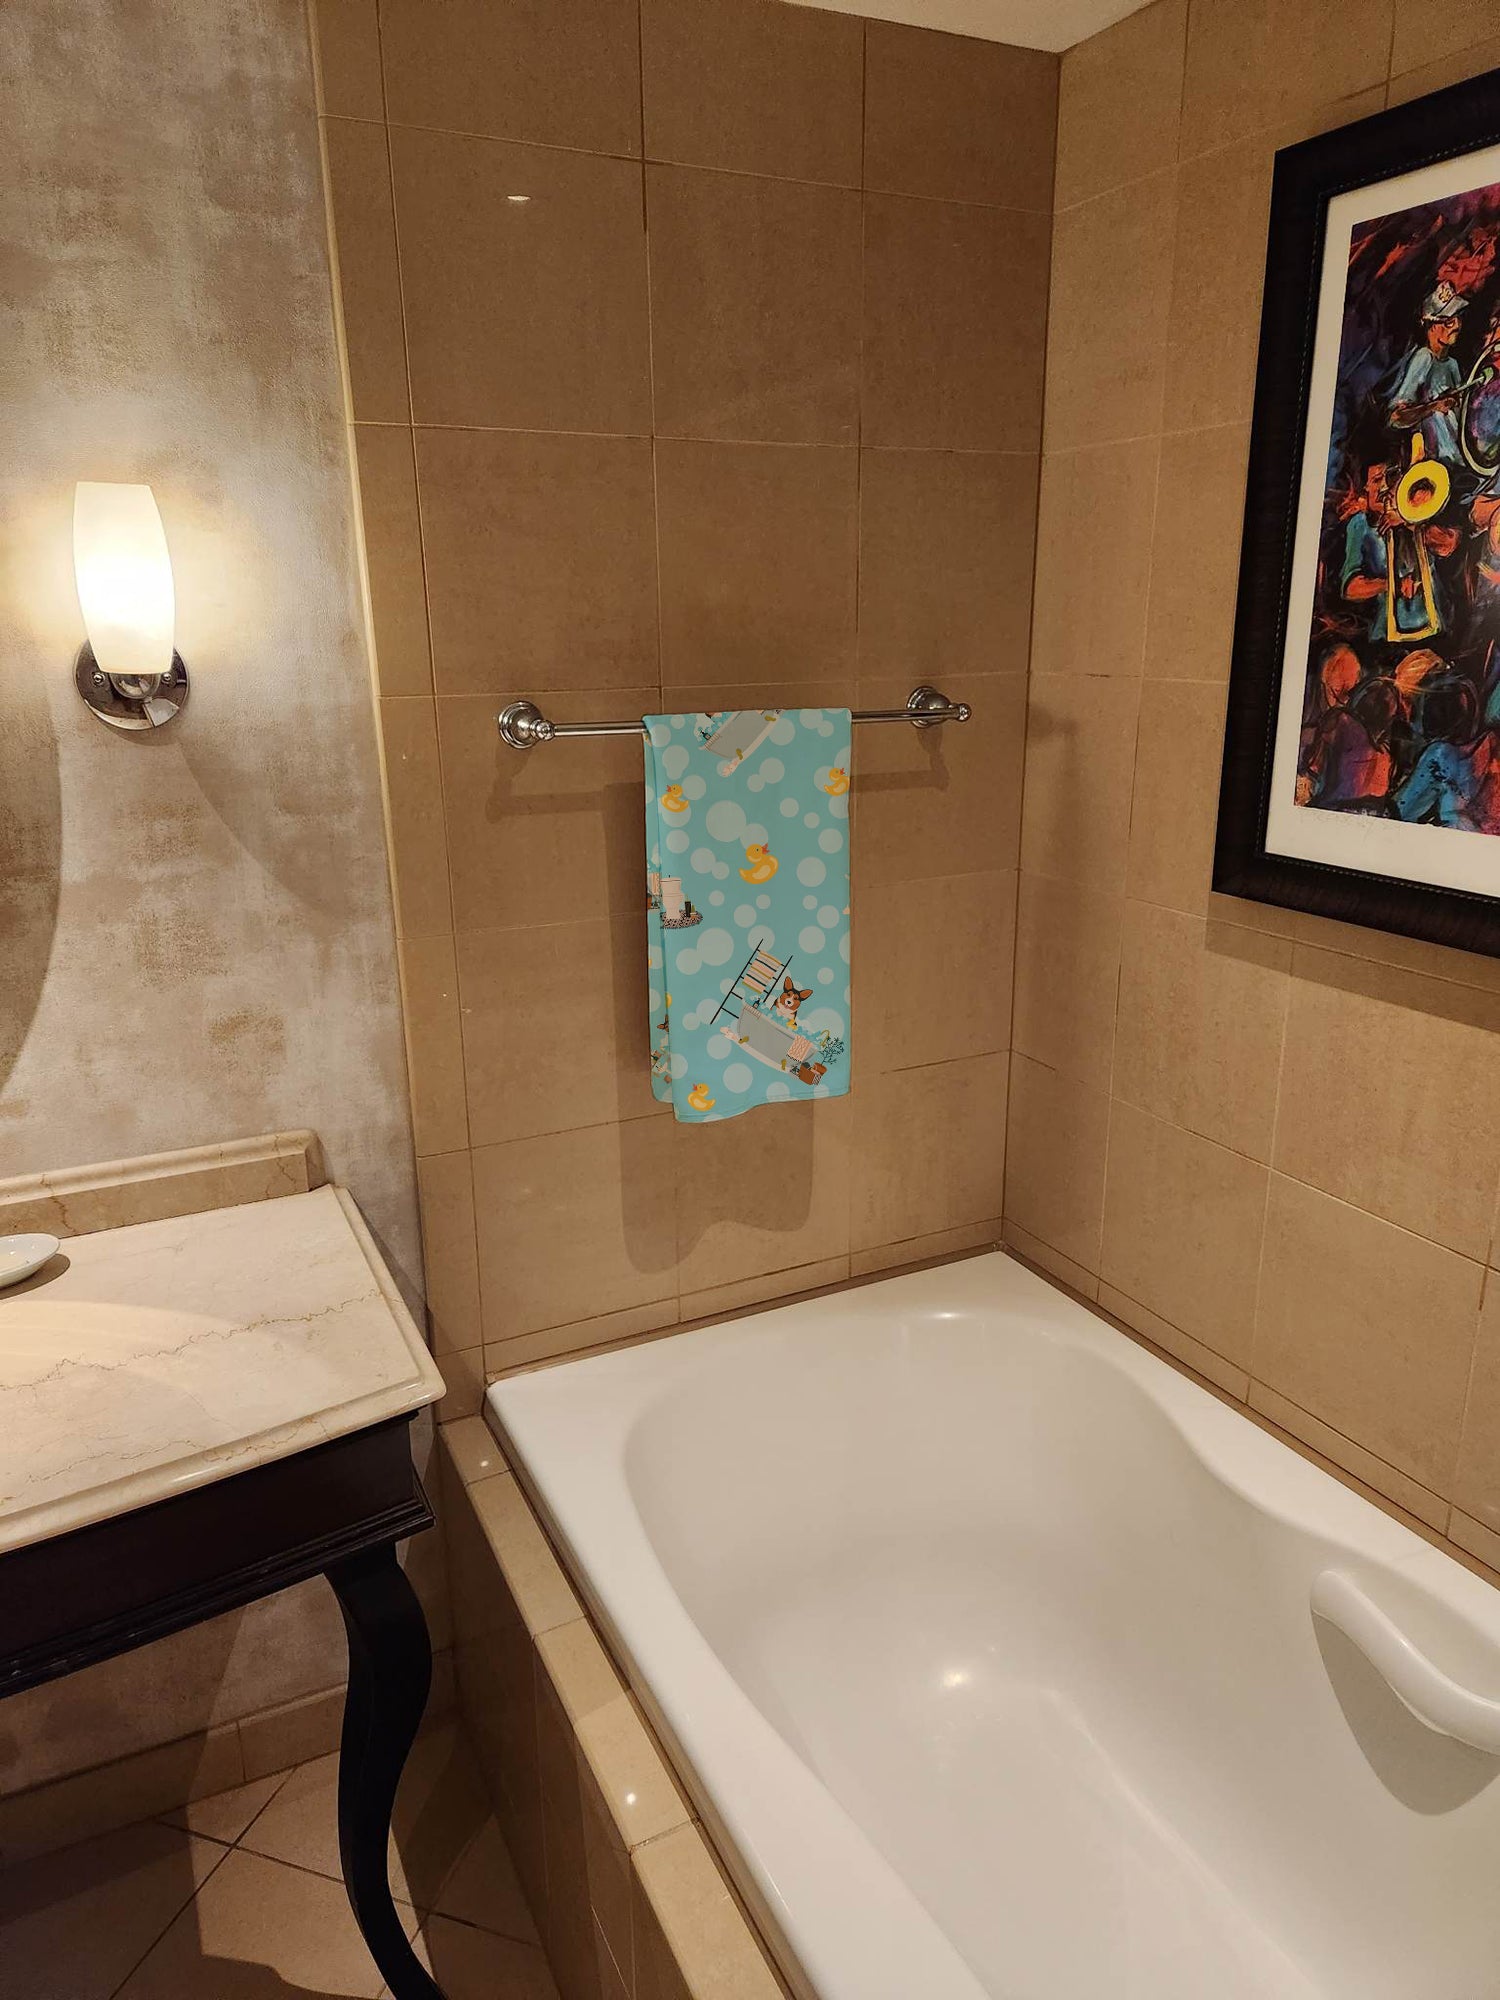 Sable Pembroke Corgi Bath Towel Large